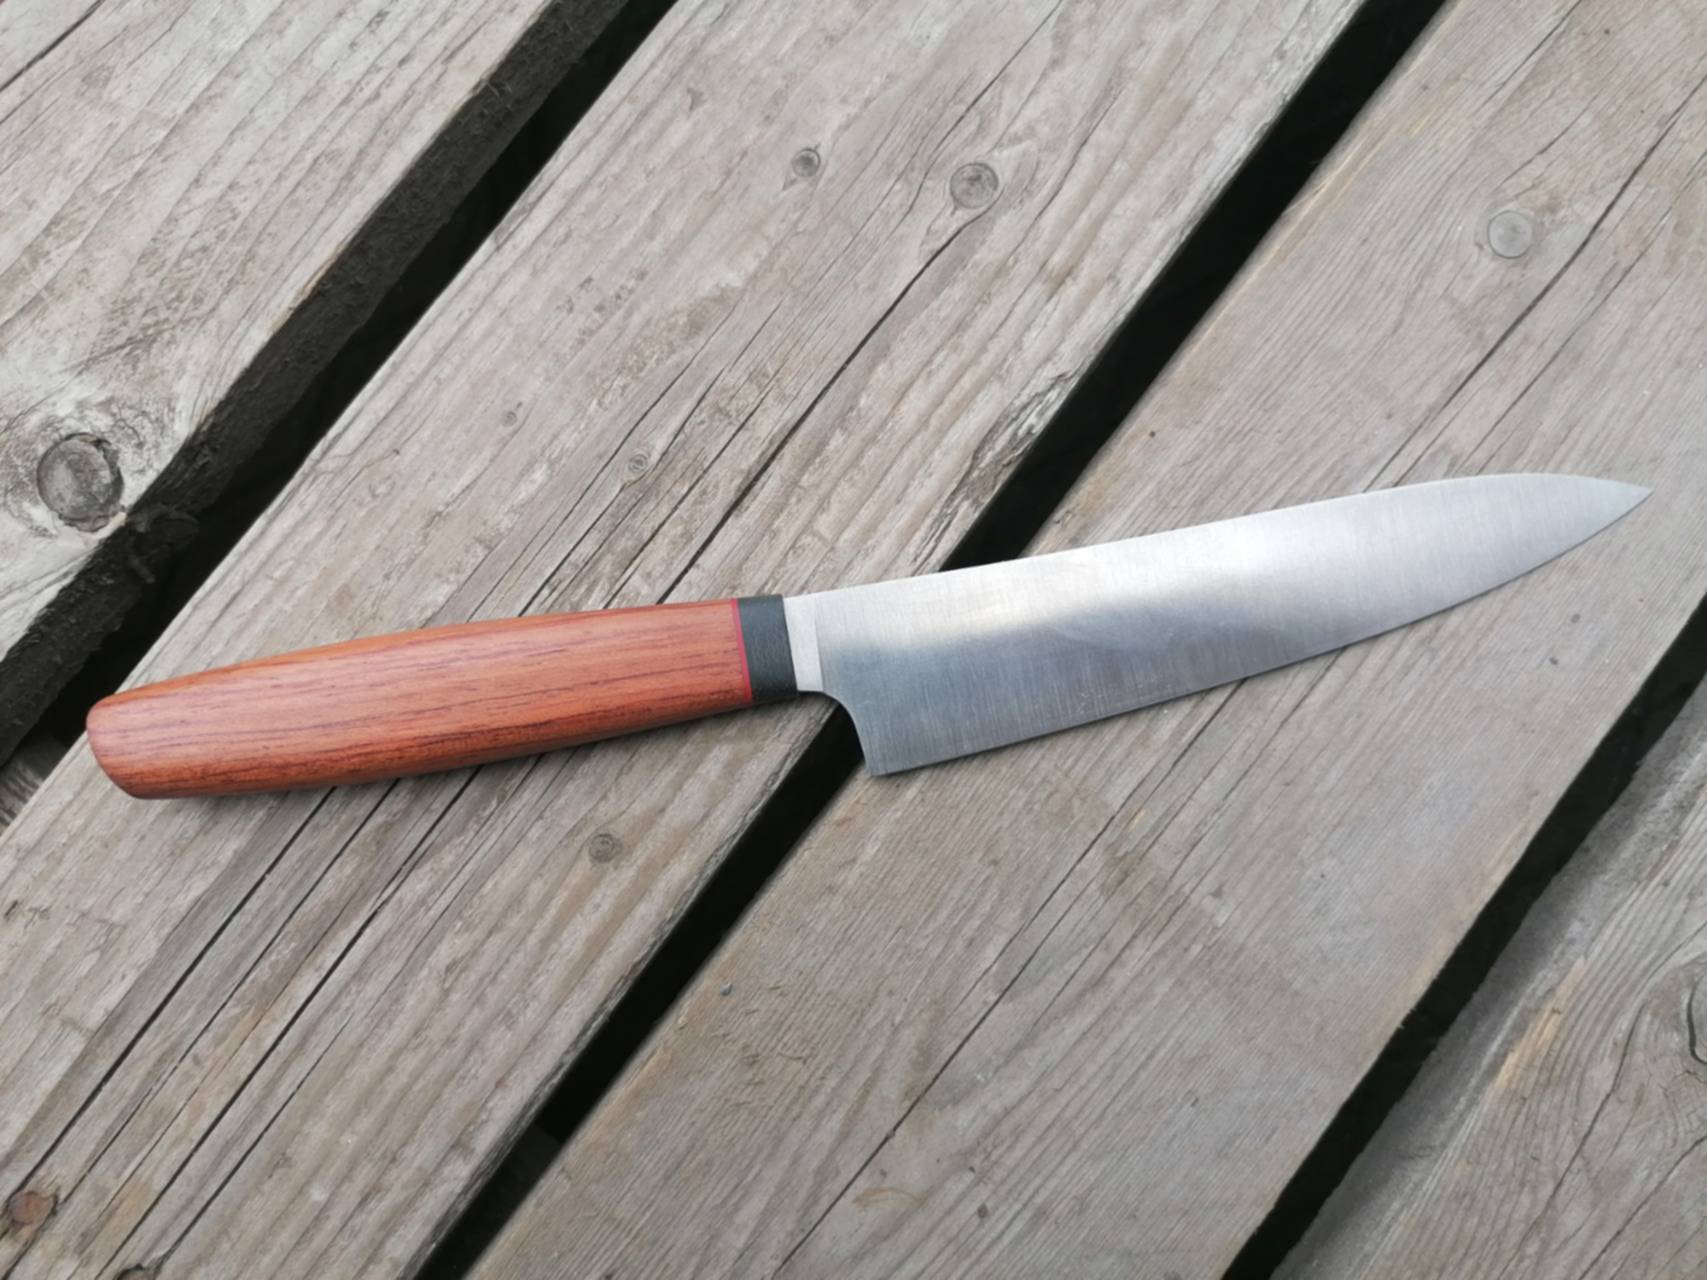 Сделать кухонный нож. Советский кухонный нож с больстером. Кухонный нож спуски не от обуха. Нож торседора. Кухонный нож с косым больстером.